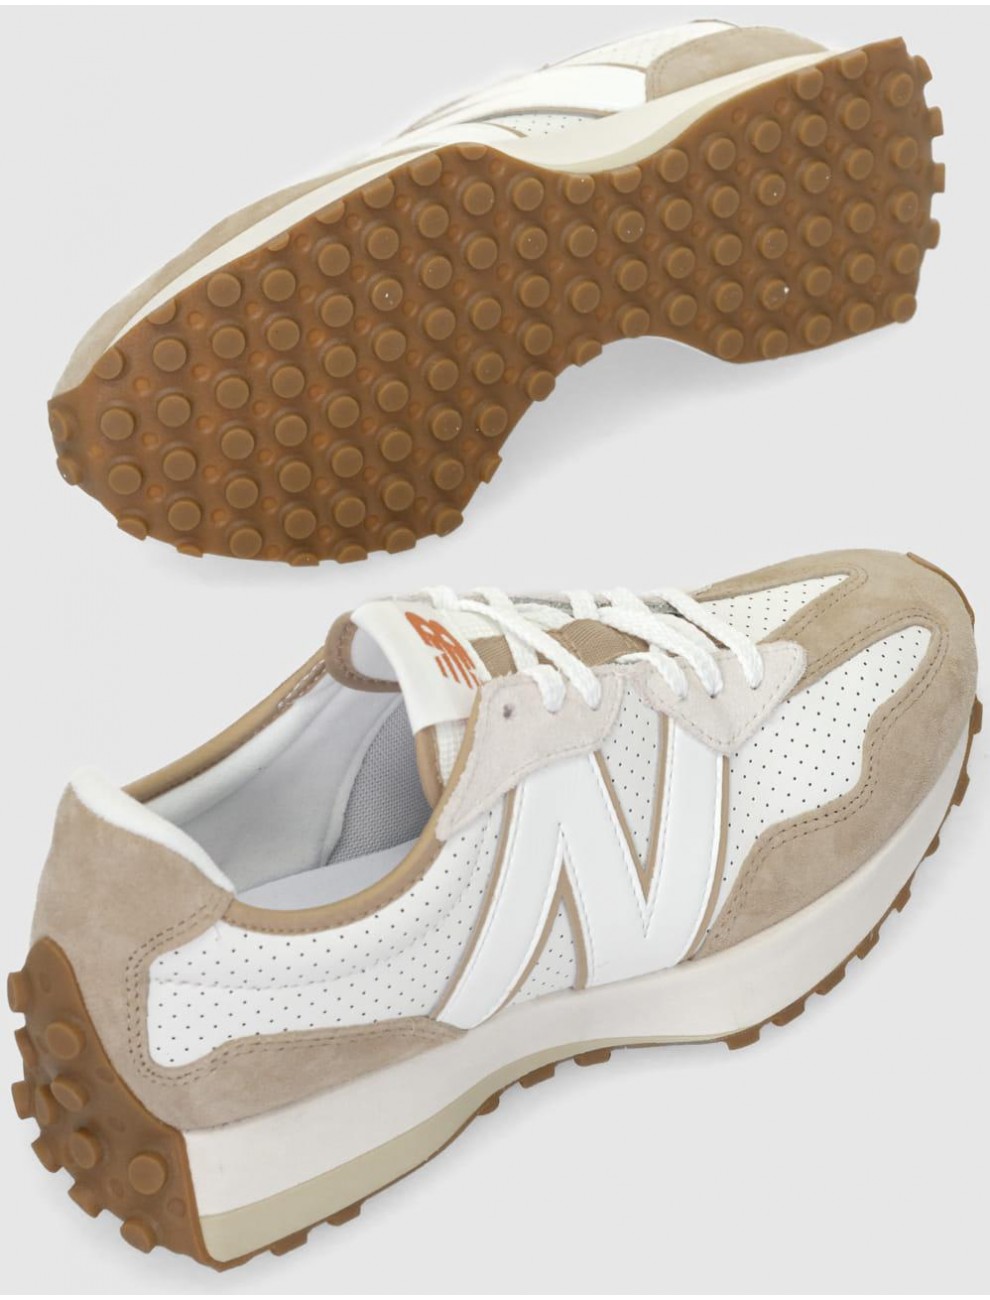 Zapatillas deportivas sneaker de mujer NEW BALANCE ms327mp color beige